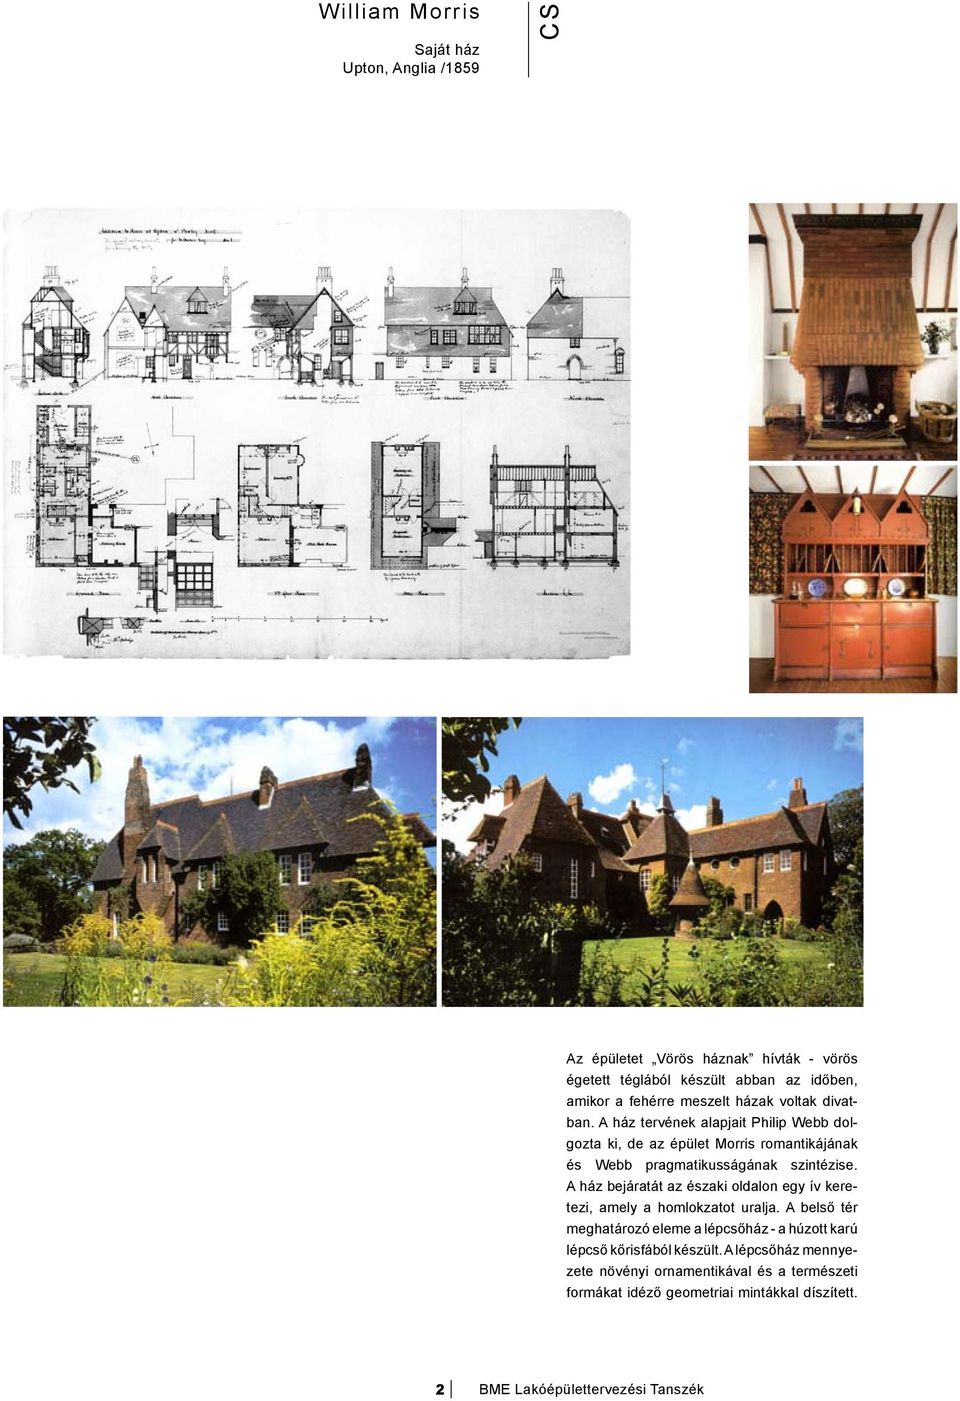 A ház tervének alapjait Philip Webb dolgozta ki, de az épület Morris romantikájának és Webb pragmatikusságának szintézise.